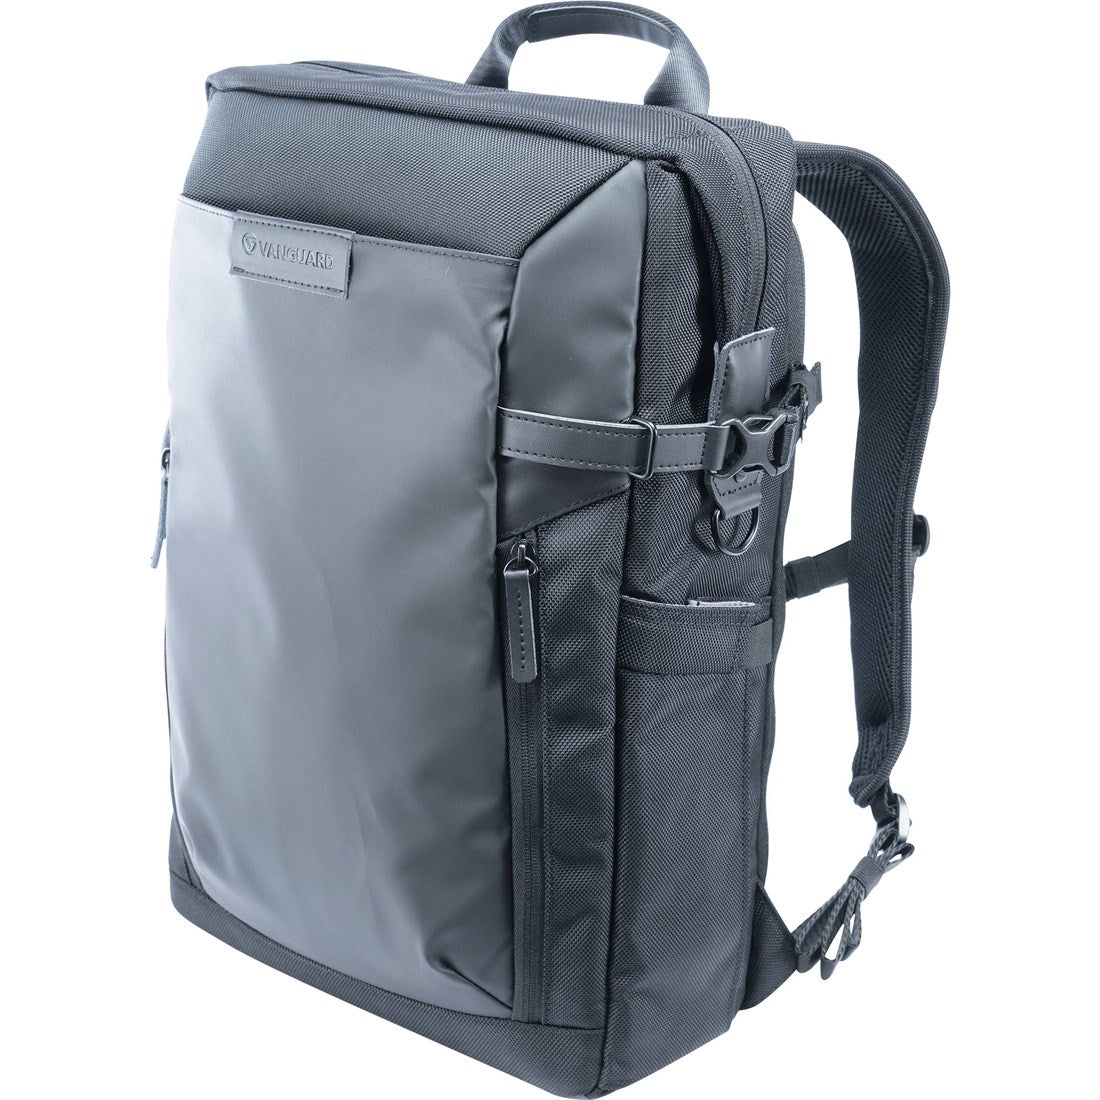 Product Image of Vanguard Veo Select 49 - Black Backpack/Shoulder Bag For DSLR/Mirrorless Cameras